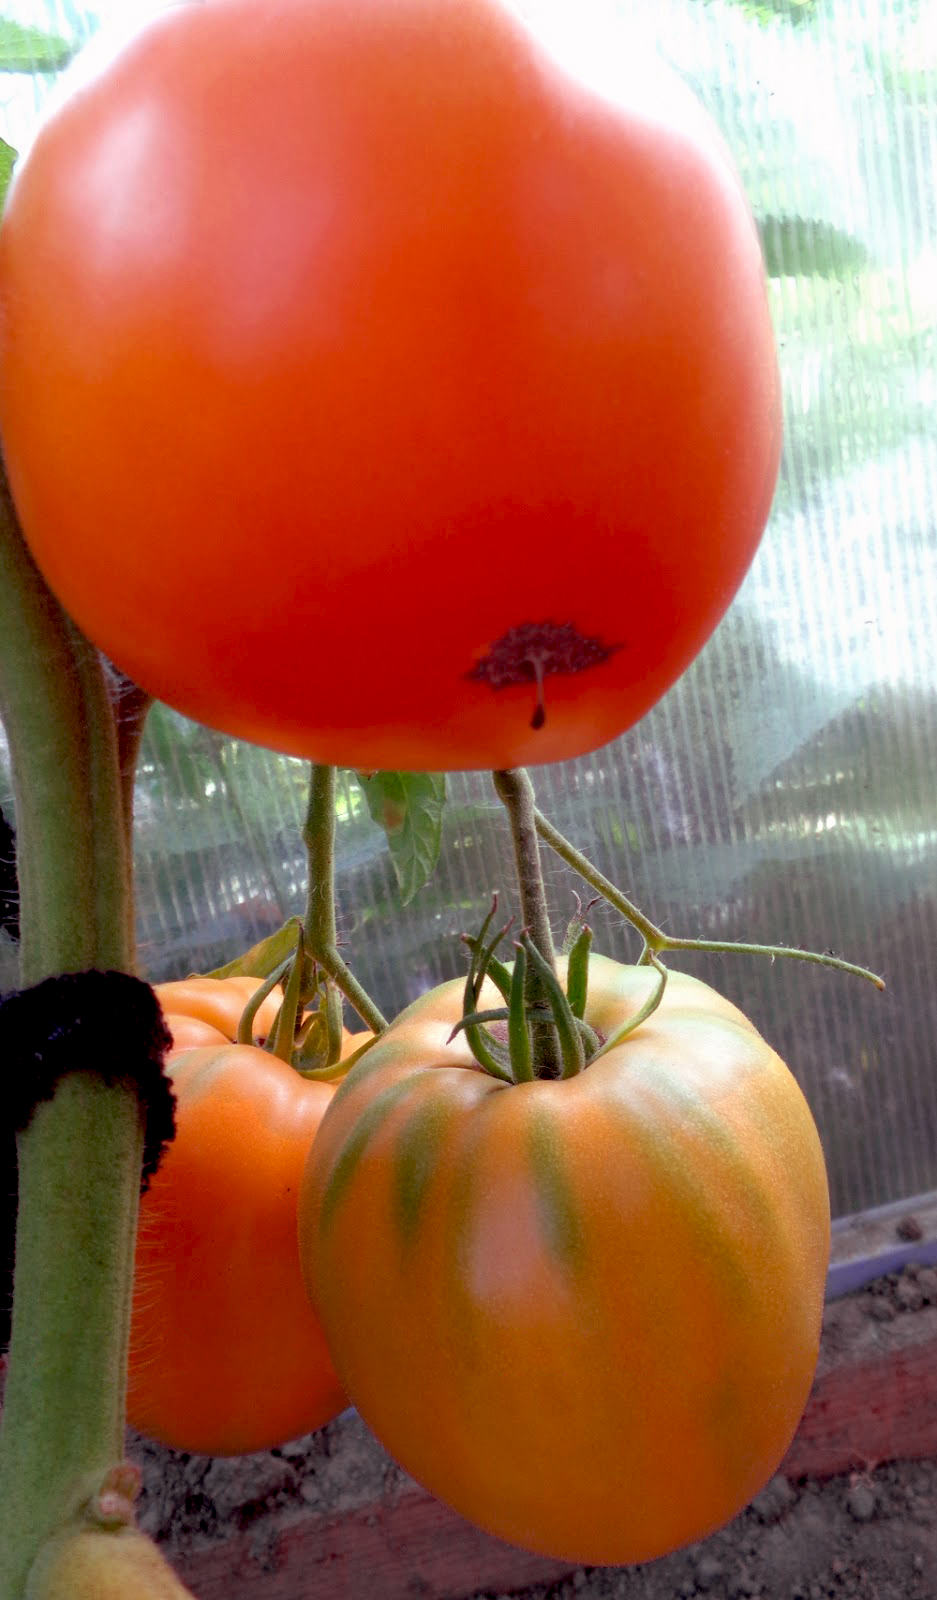 Медовый спас томаты урожайность